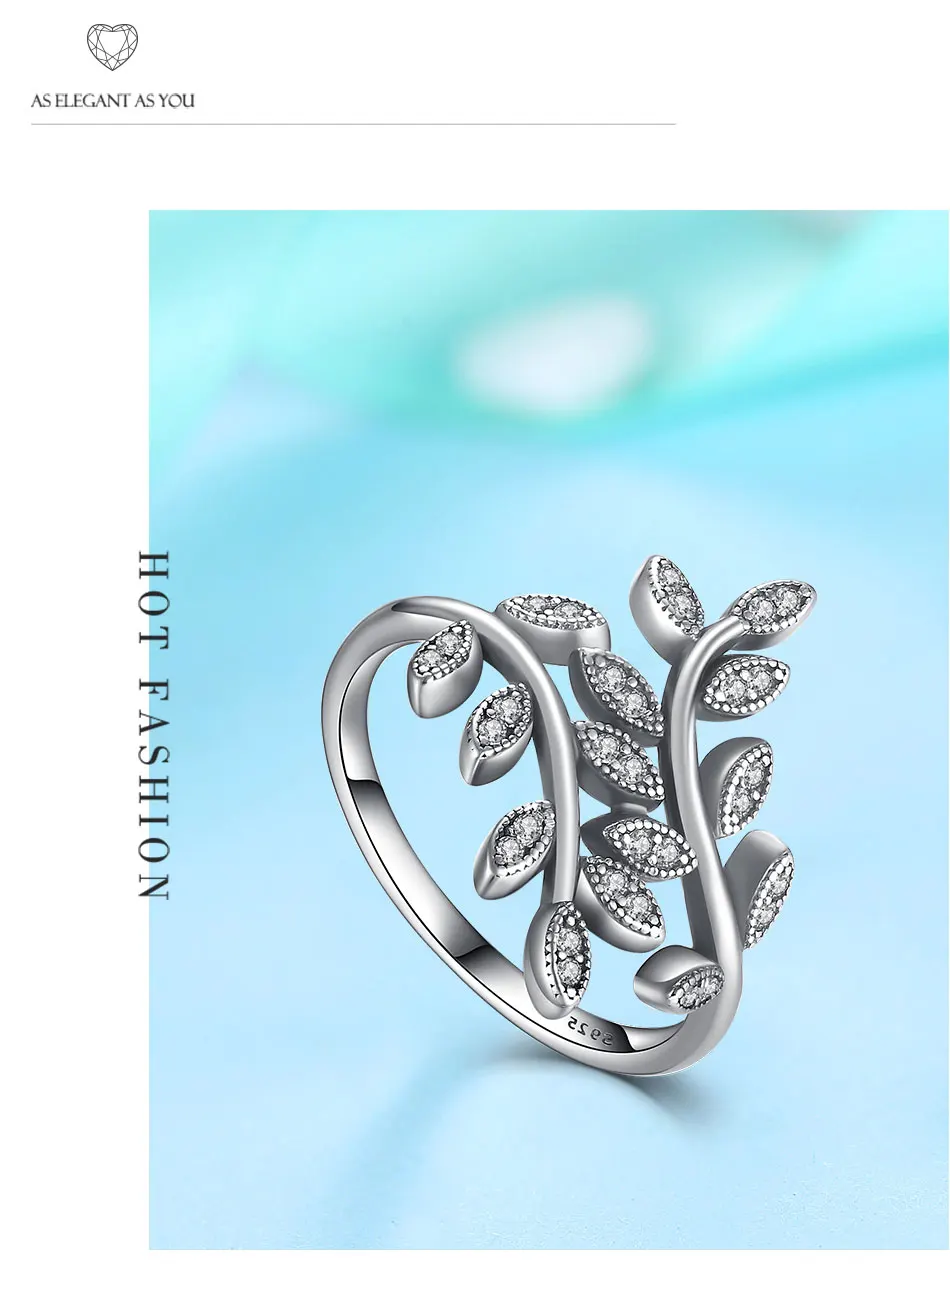 Подлинный eleshe 925 пробы Серебряное кольцо на палец с кристаллом CZ Роскошные ювелирные изделия Модные кольца для женщин